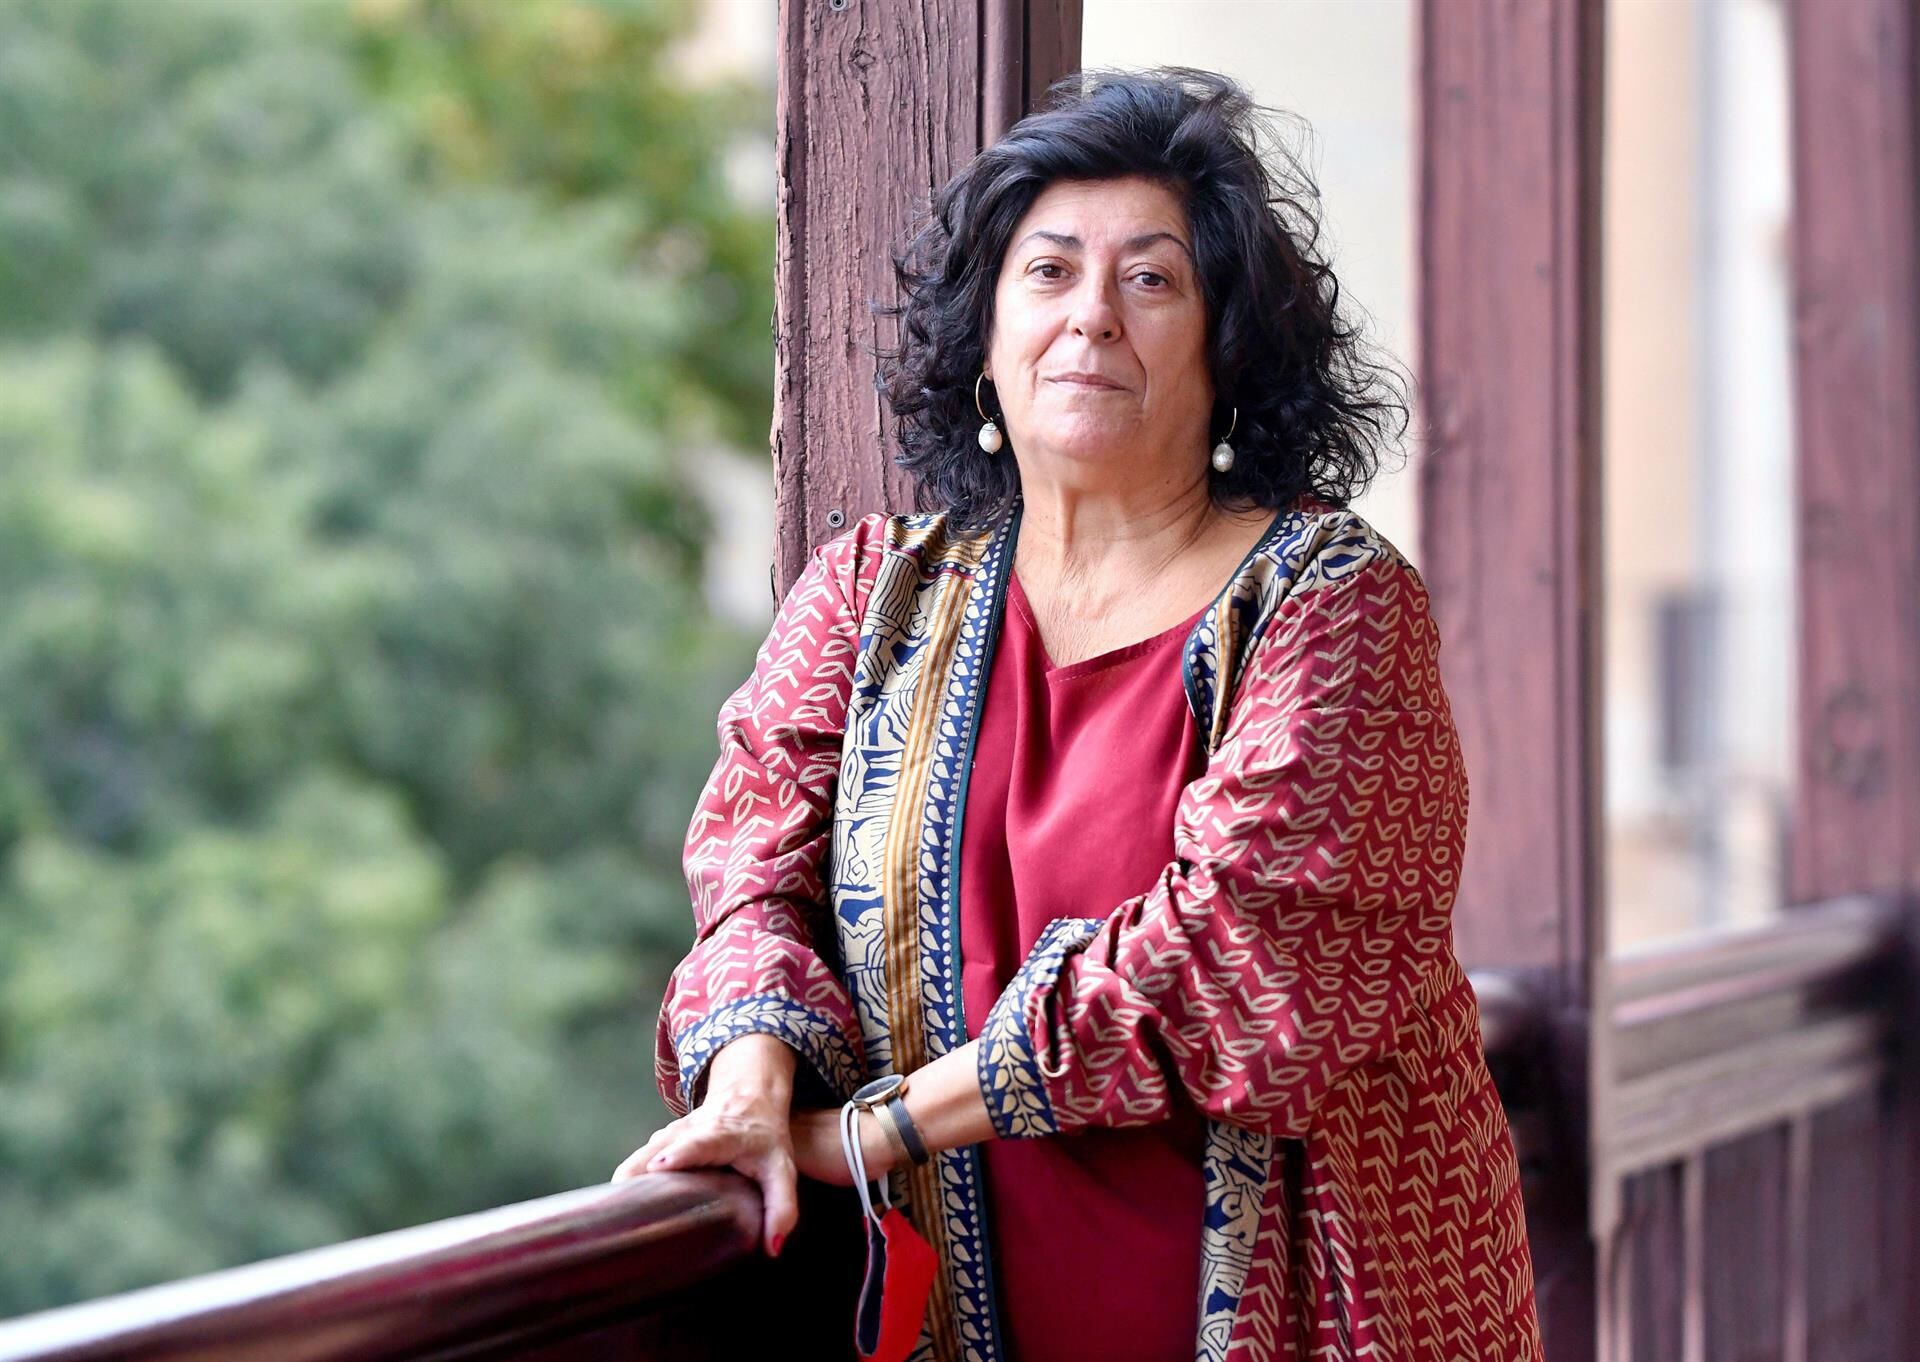 Muere Almudena Grandes, escritora española, a los 61 años